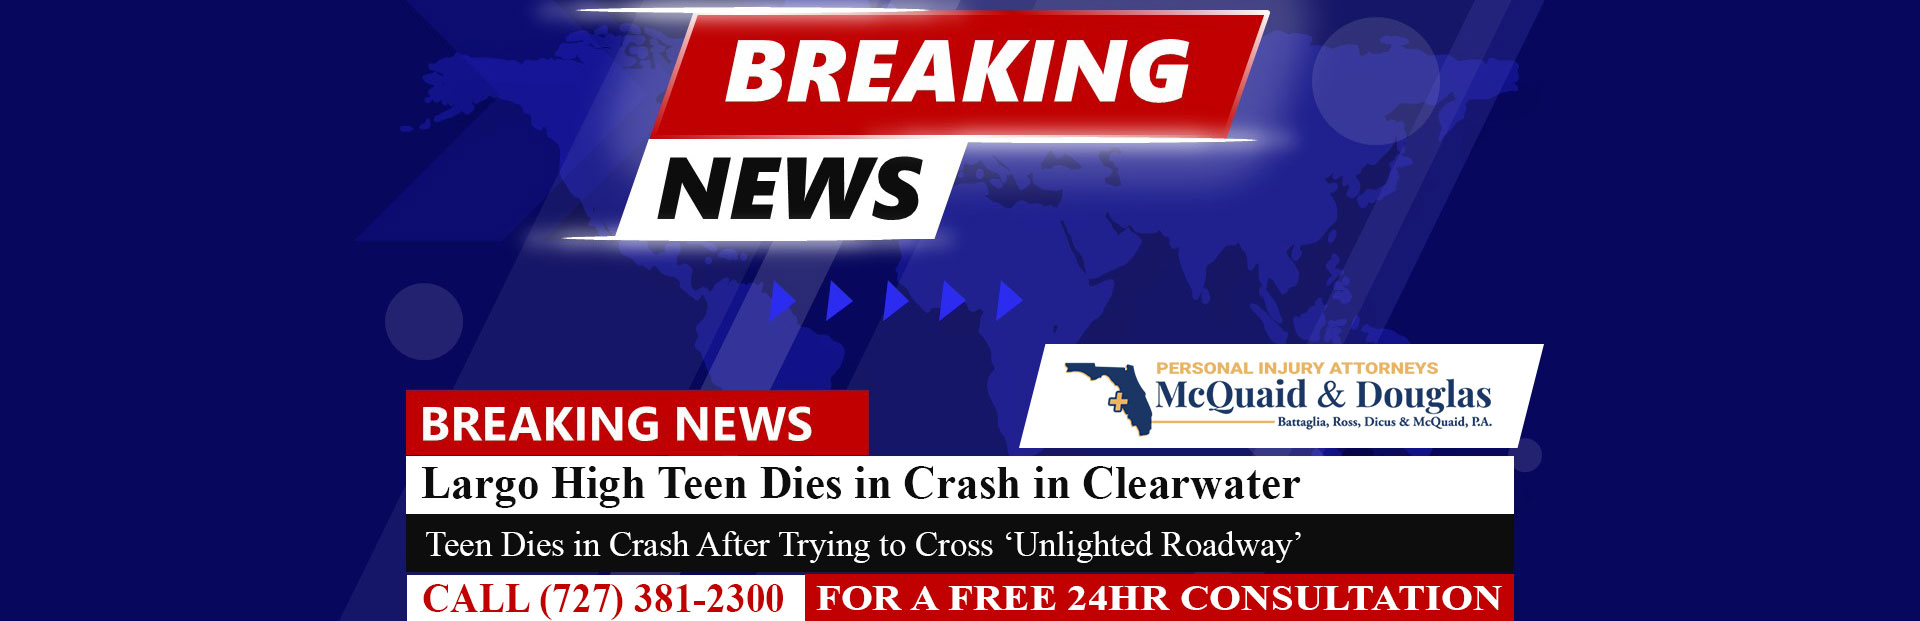 [8-26-22] Adolescente de Largo High muere en accidente después de intentar cruzar 'Unlighted Roadway'